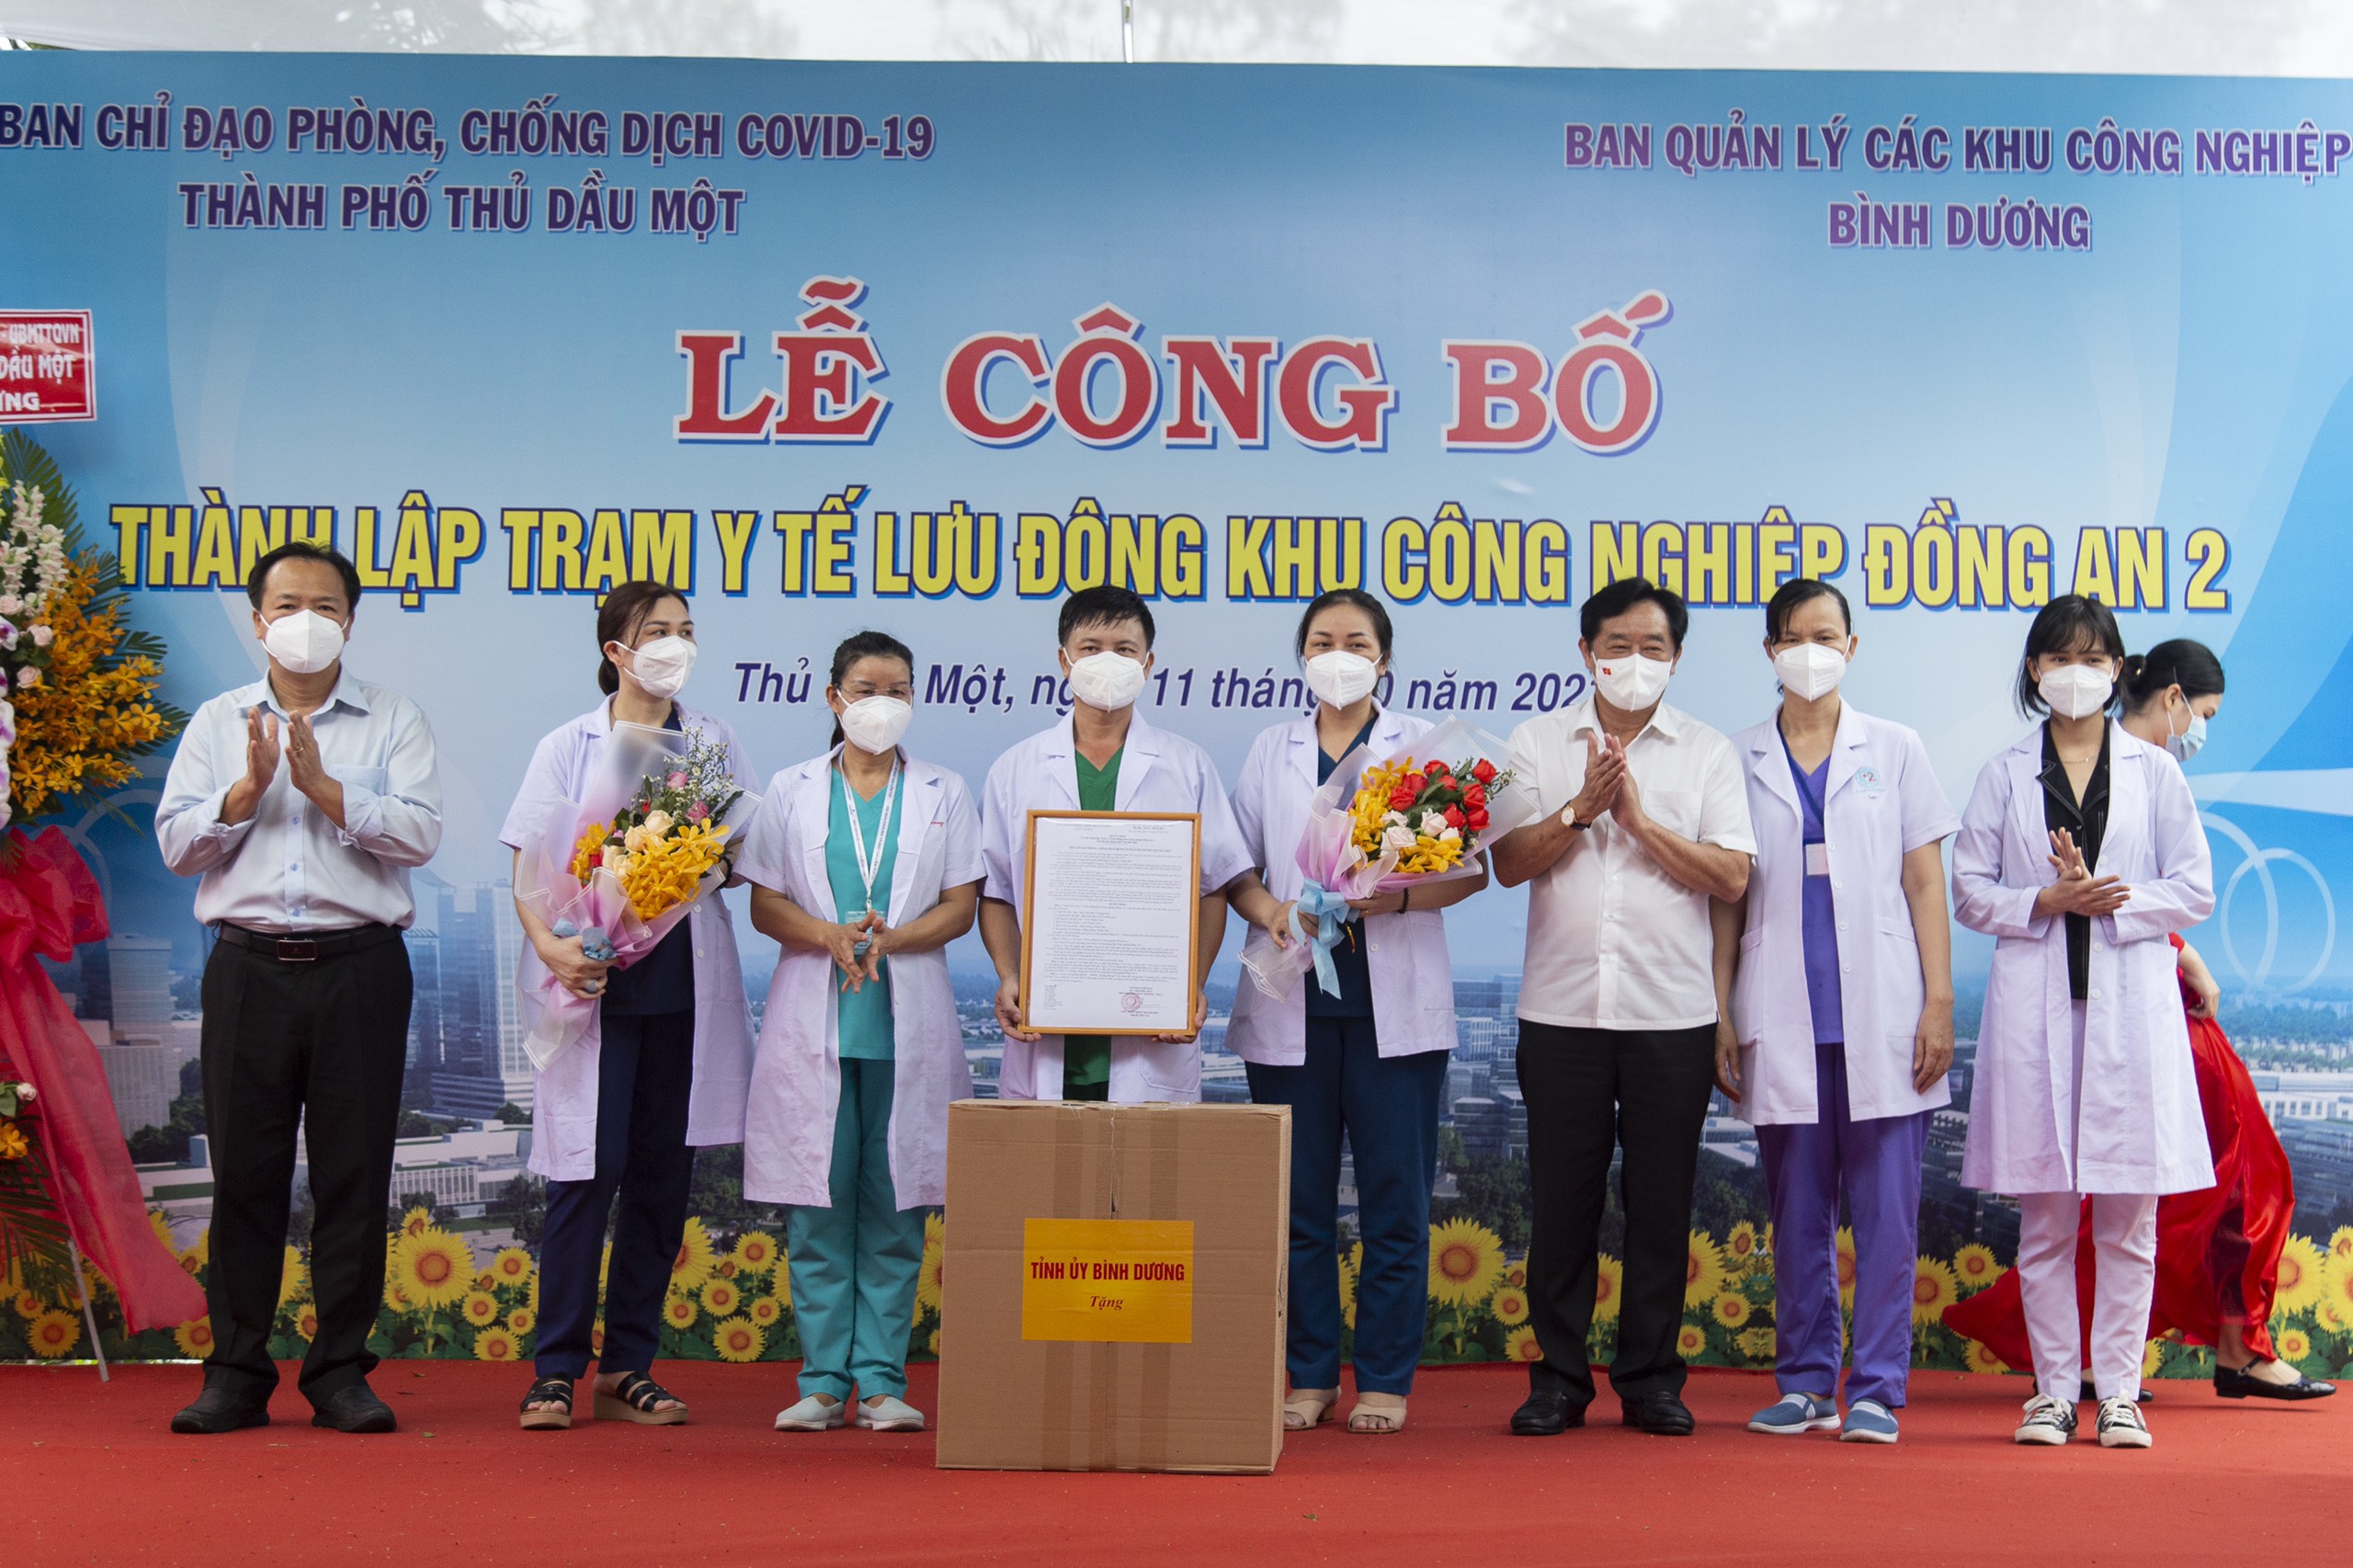 Công bố thành lập Trạm Y tế lưu động tại KCN Đồng An 2 - Hỗ trợ doanh nghiệp phục hồi sản xuất hậu COVID-19